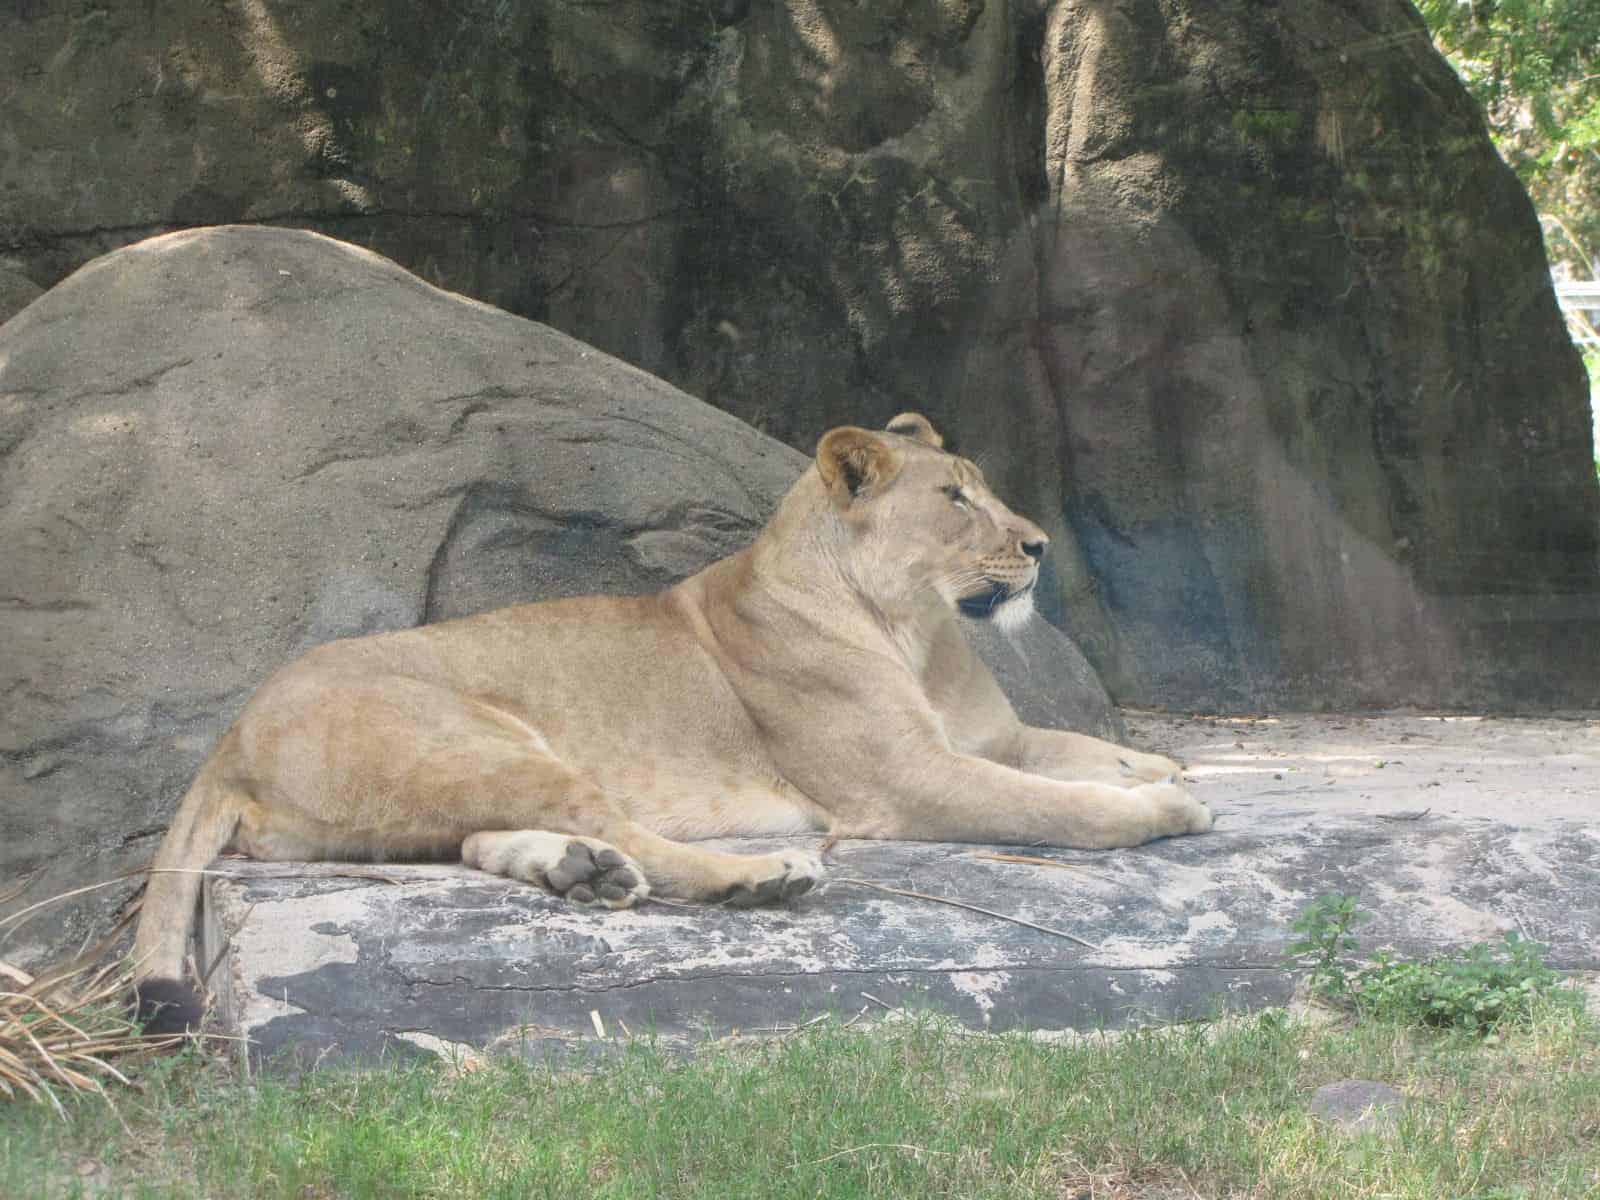 Lion at Houston Zoo in Houston TX